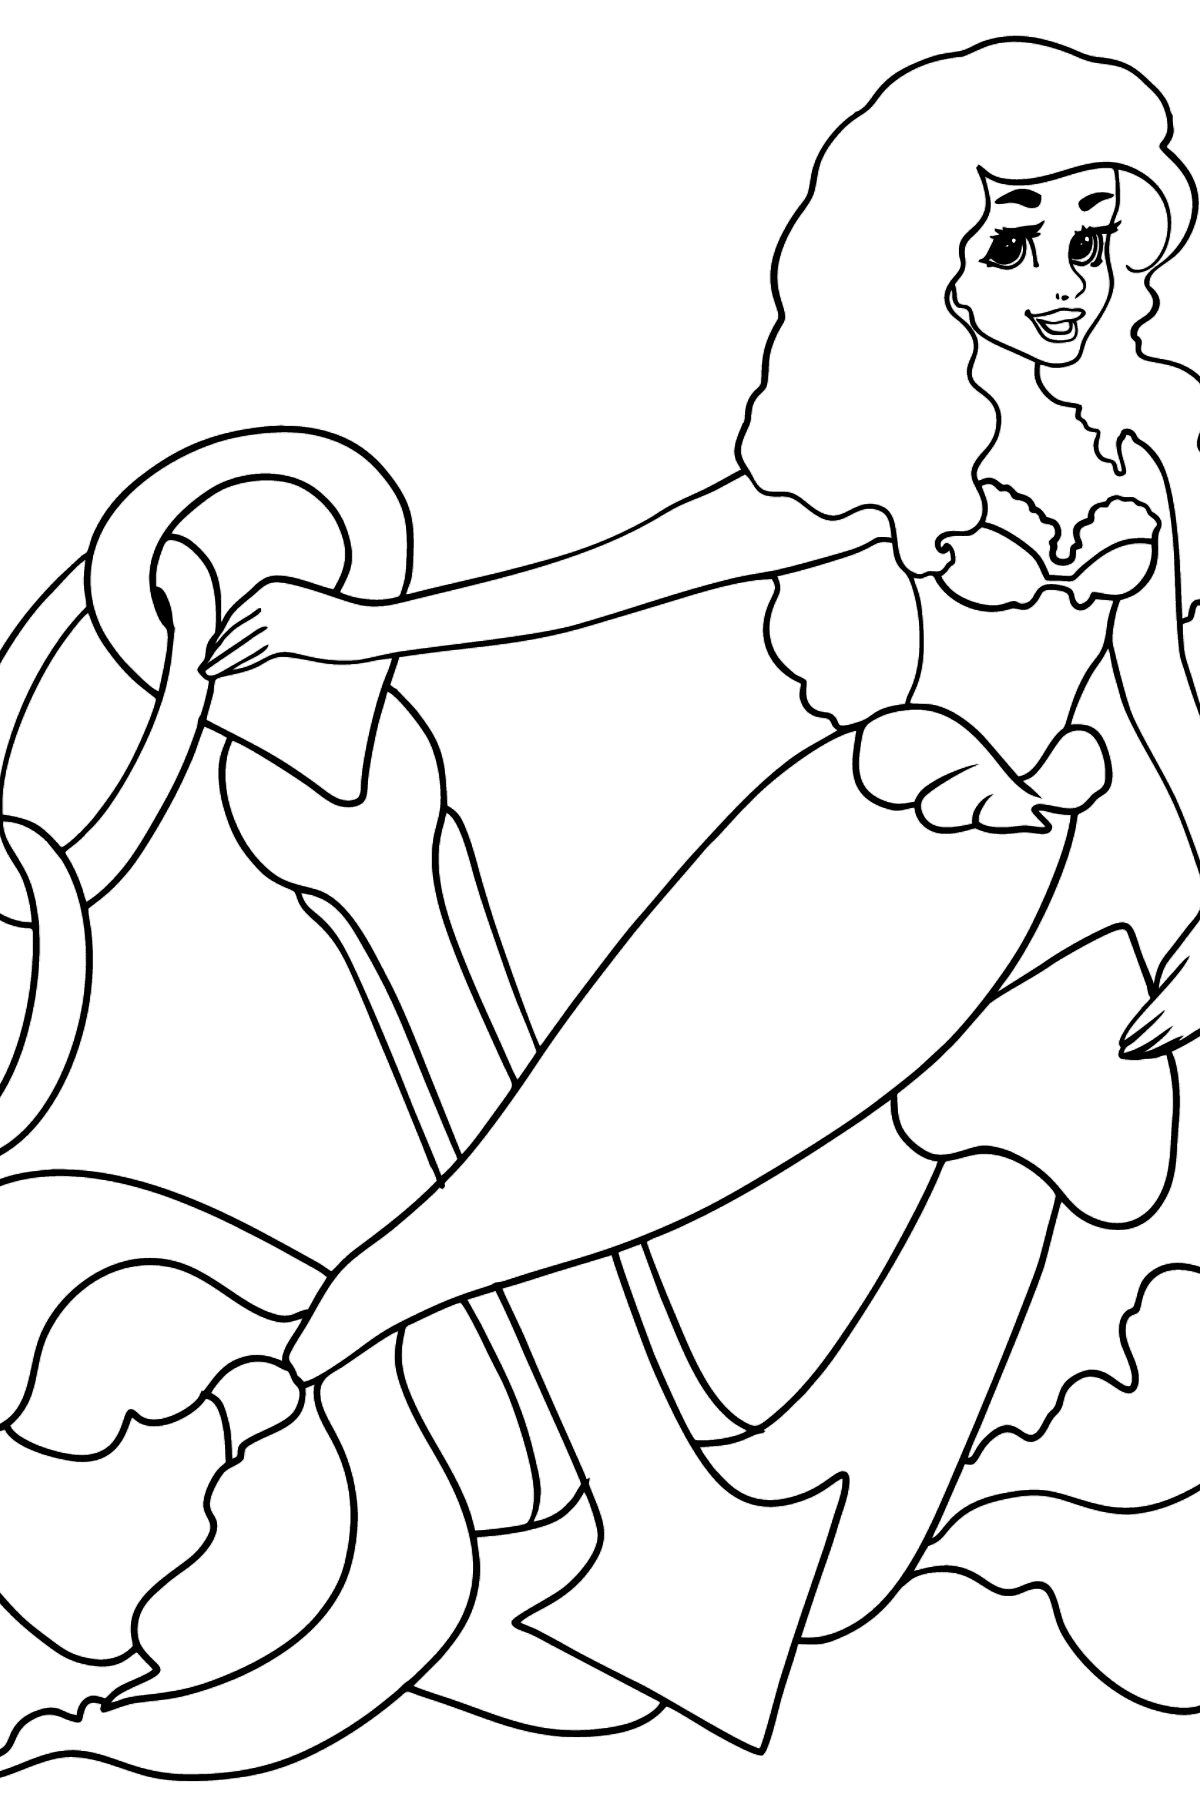 Desenho para colorir sereia e âncora - Imagens para Colorir para Crianças